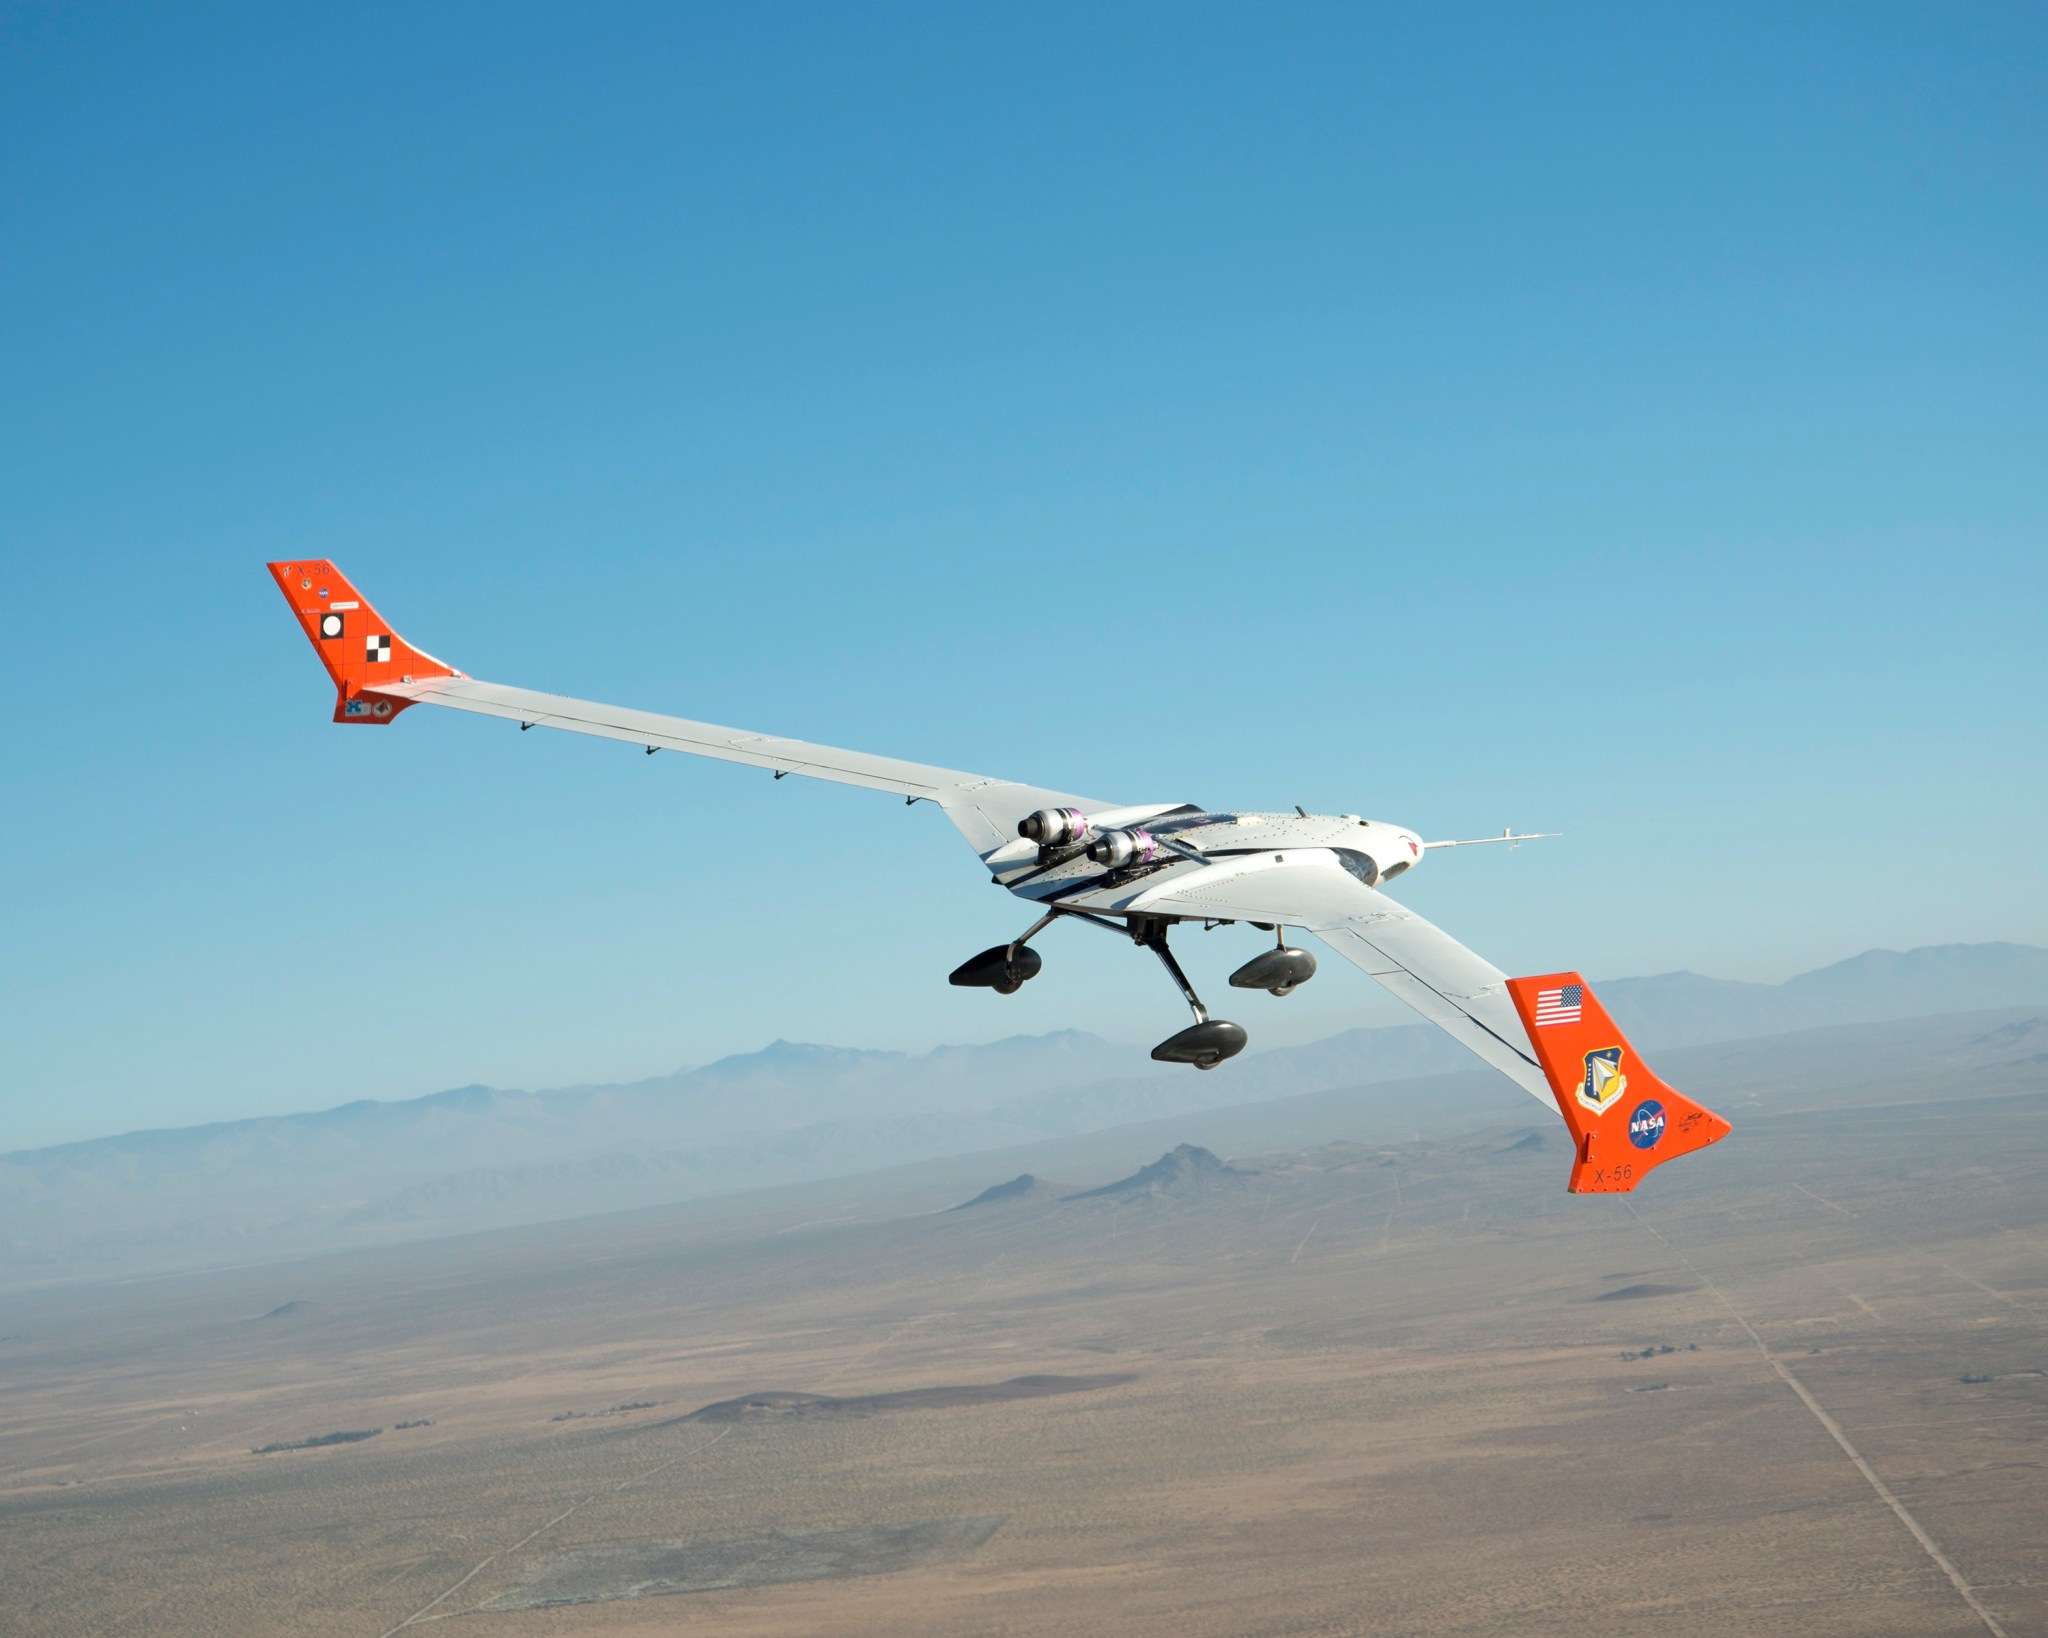 X-56A in flight over Mojave Desert.